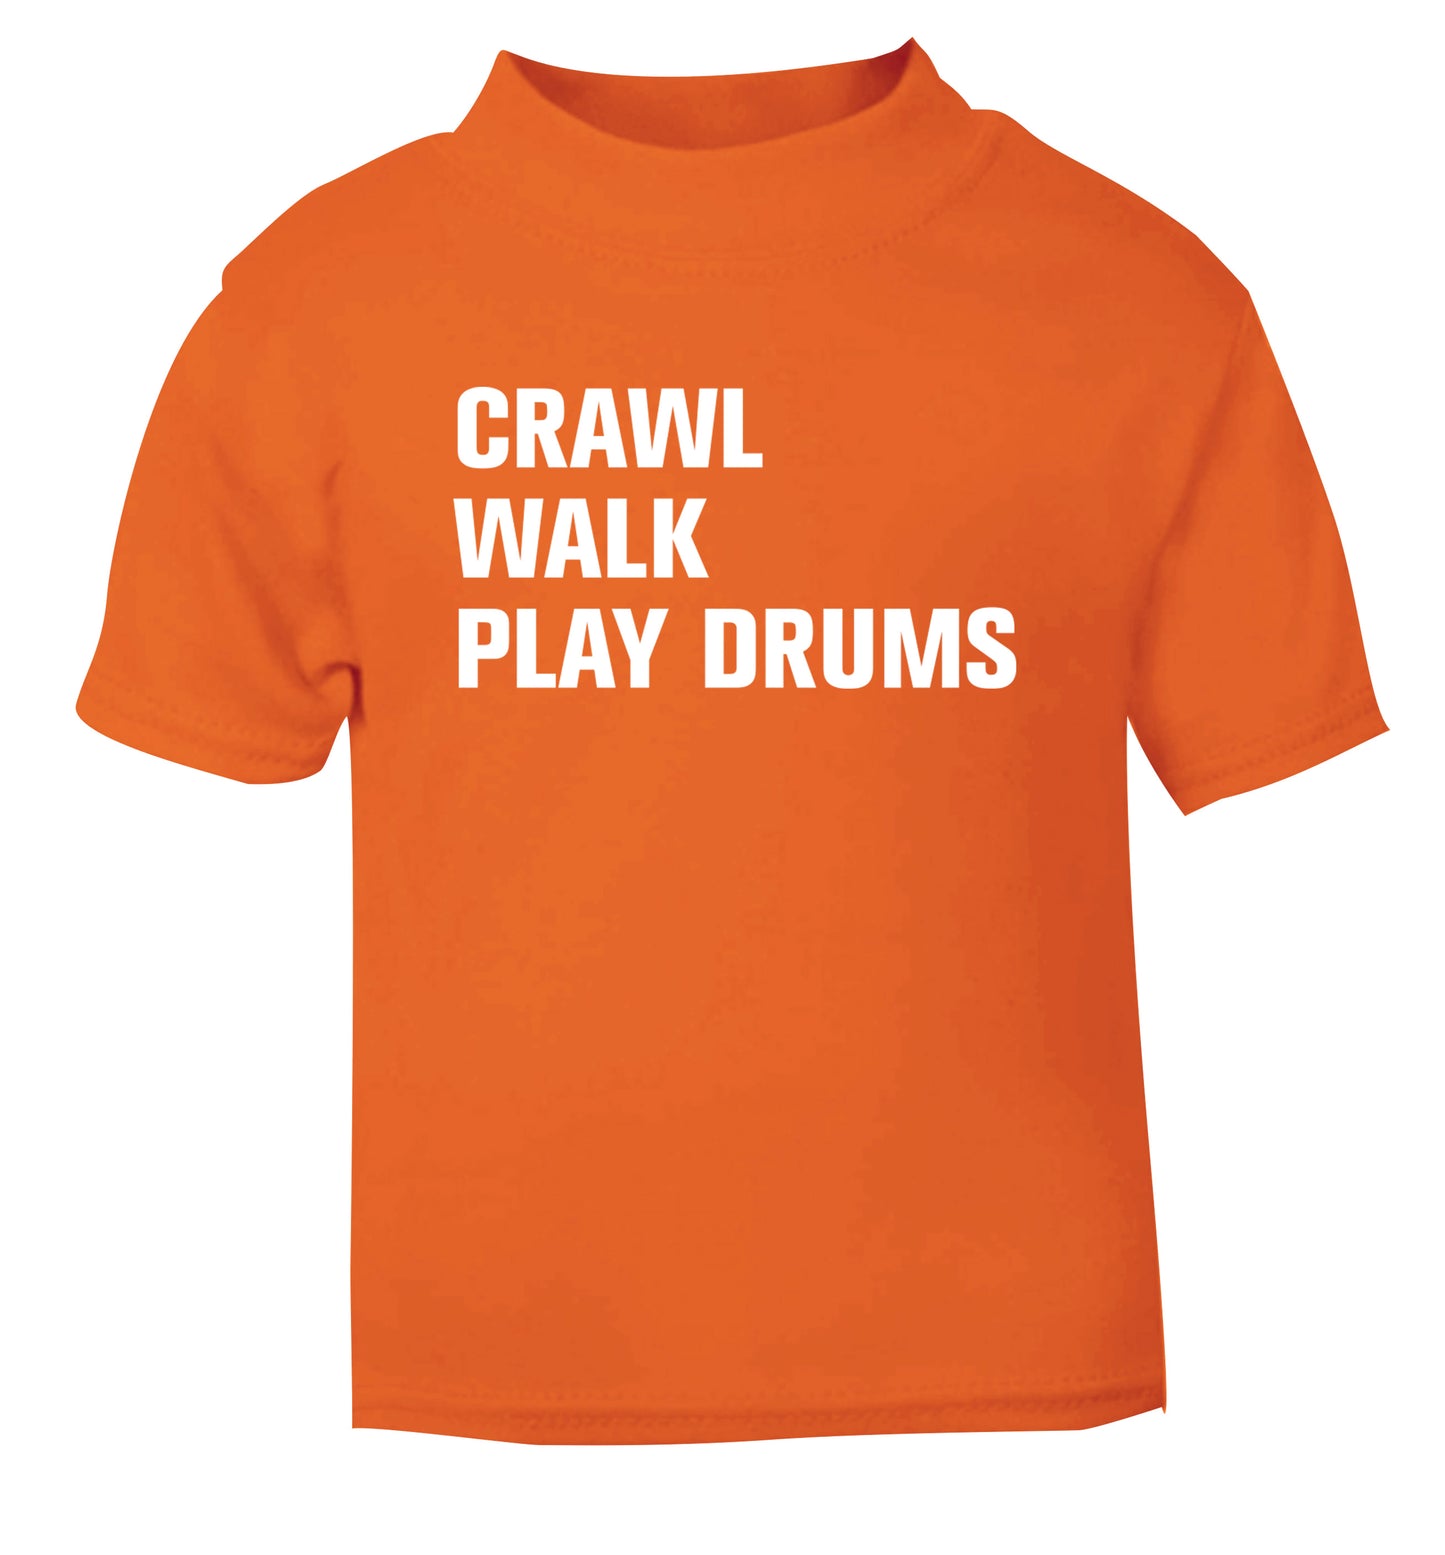 Crawl walk play drums orange Baby Toddler Tshirt 2 Years